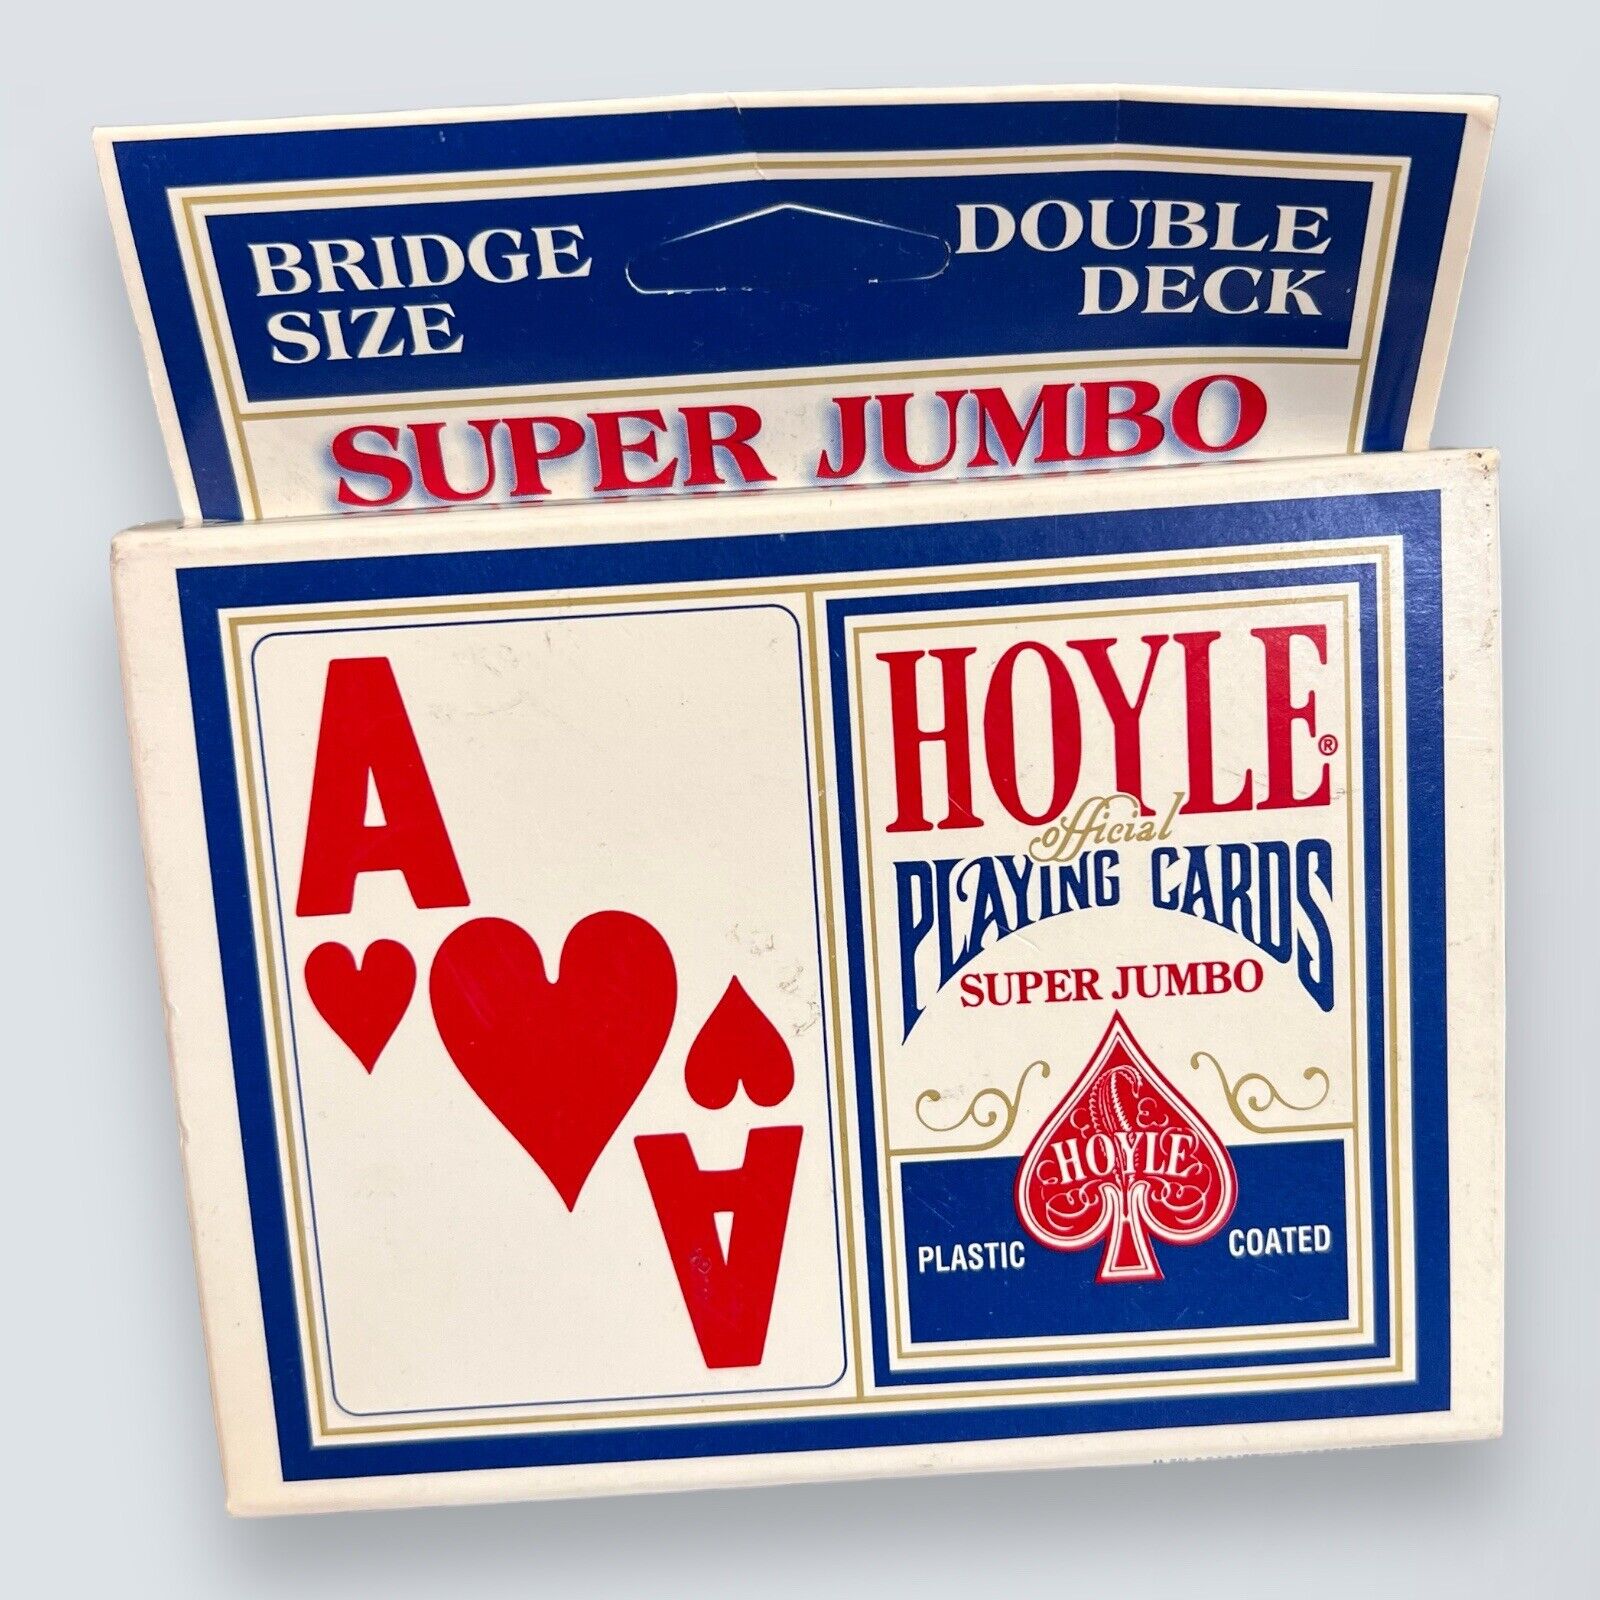 HOYLE playing cards super jumbo extra large faces vintage 2 Decks Bridge Size